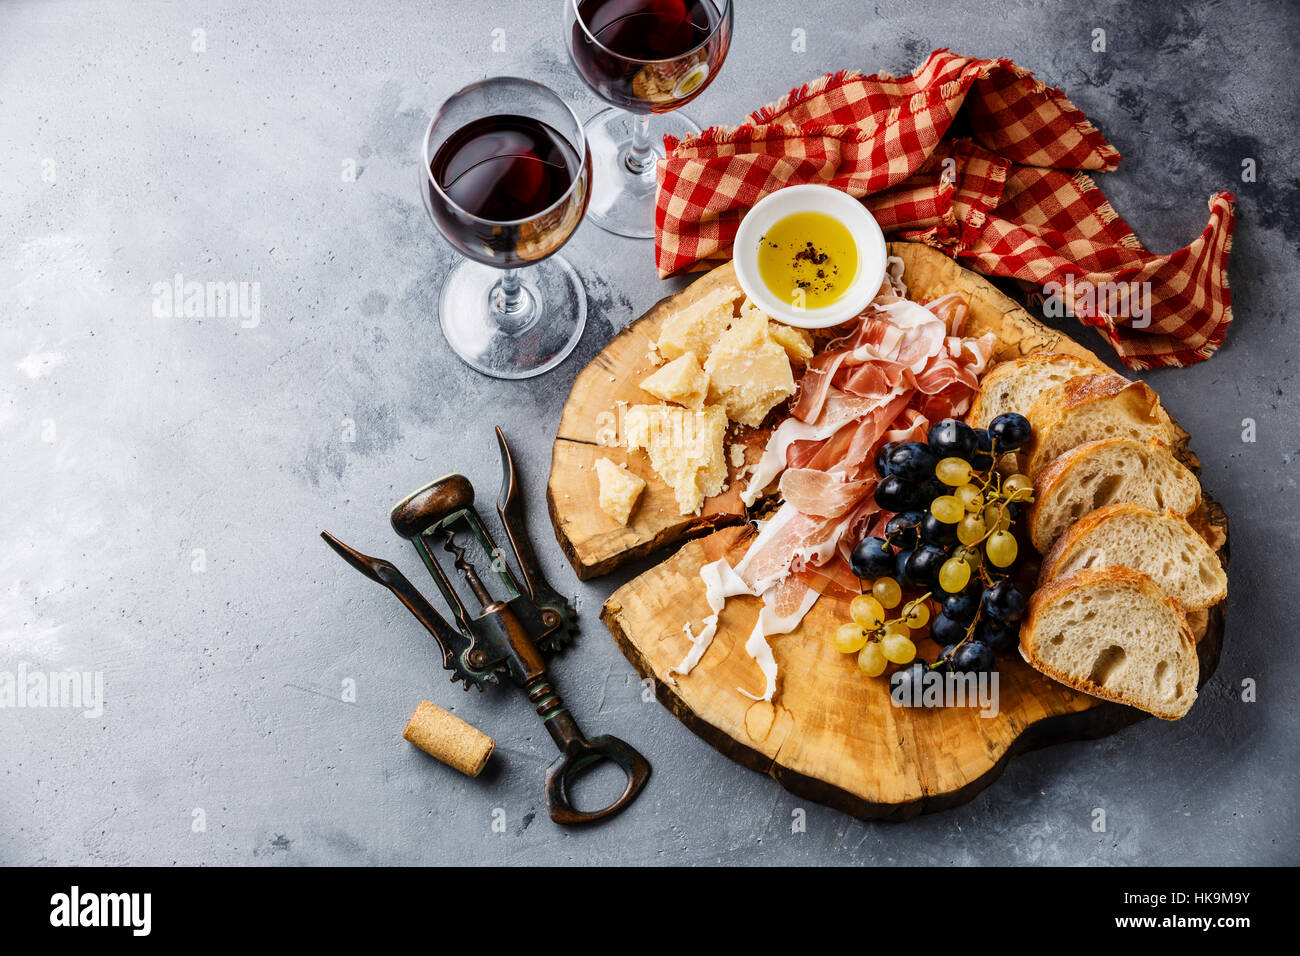 La plaque d'entrée avec le prosciutto, fromage parmesan, pain et vin sur fond de béton gris Banque D'Images